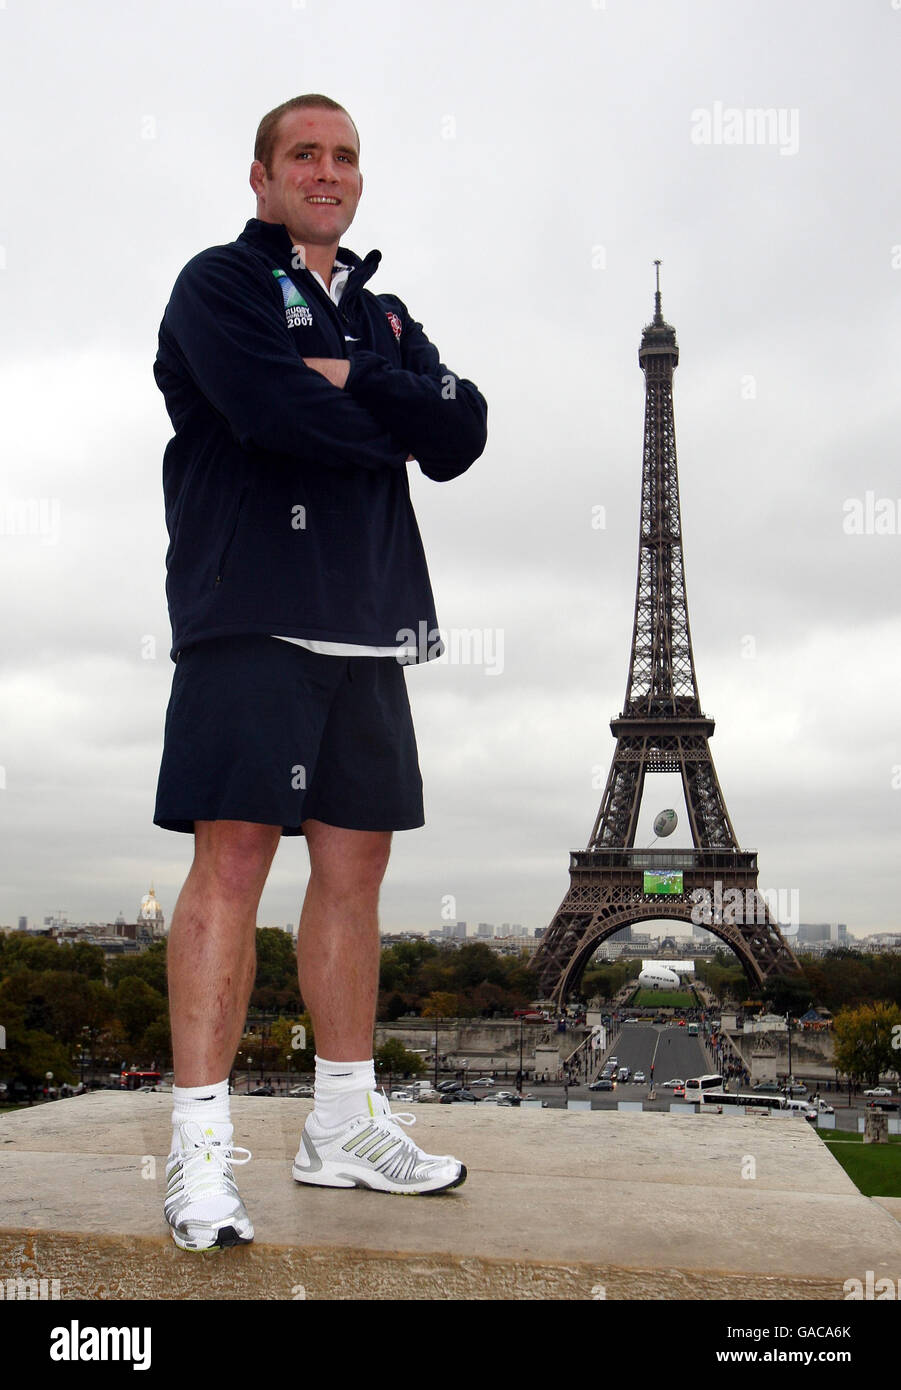 Rugby Union - IRB Rugby World Cup 2007 - England Pressekonferenz und Training - Paris. Der englische Kapitän Phil Vickery posiert für Fotos auf dem Eiffelturm in Paris, Frankreich. Stockfoto